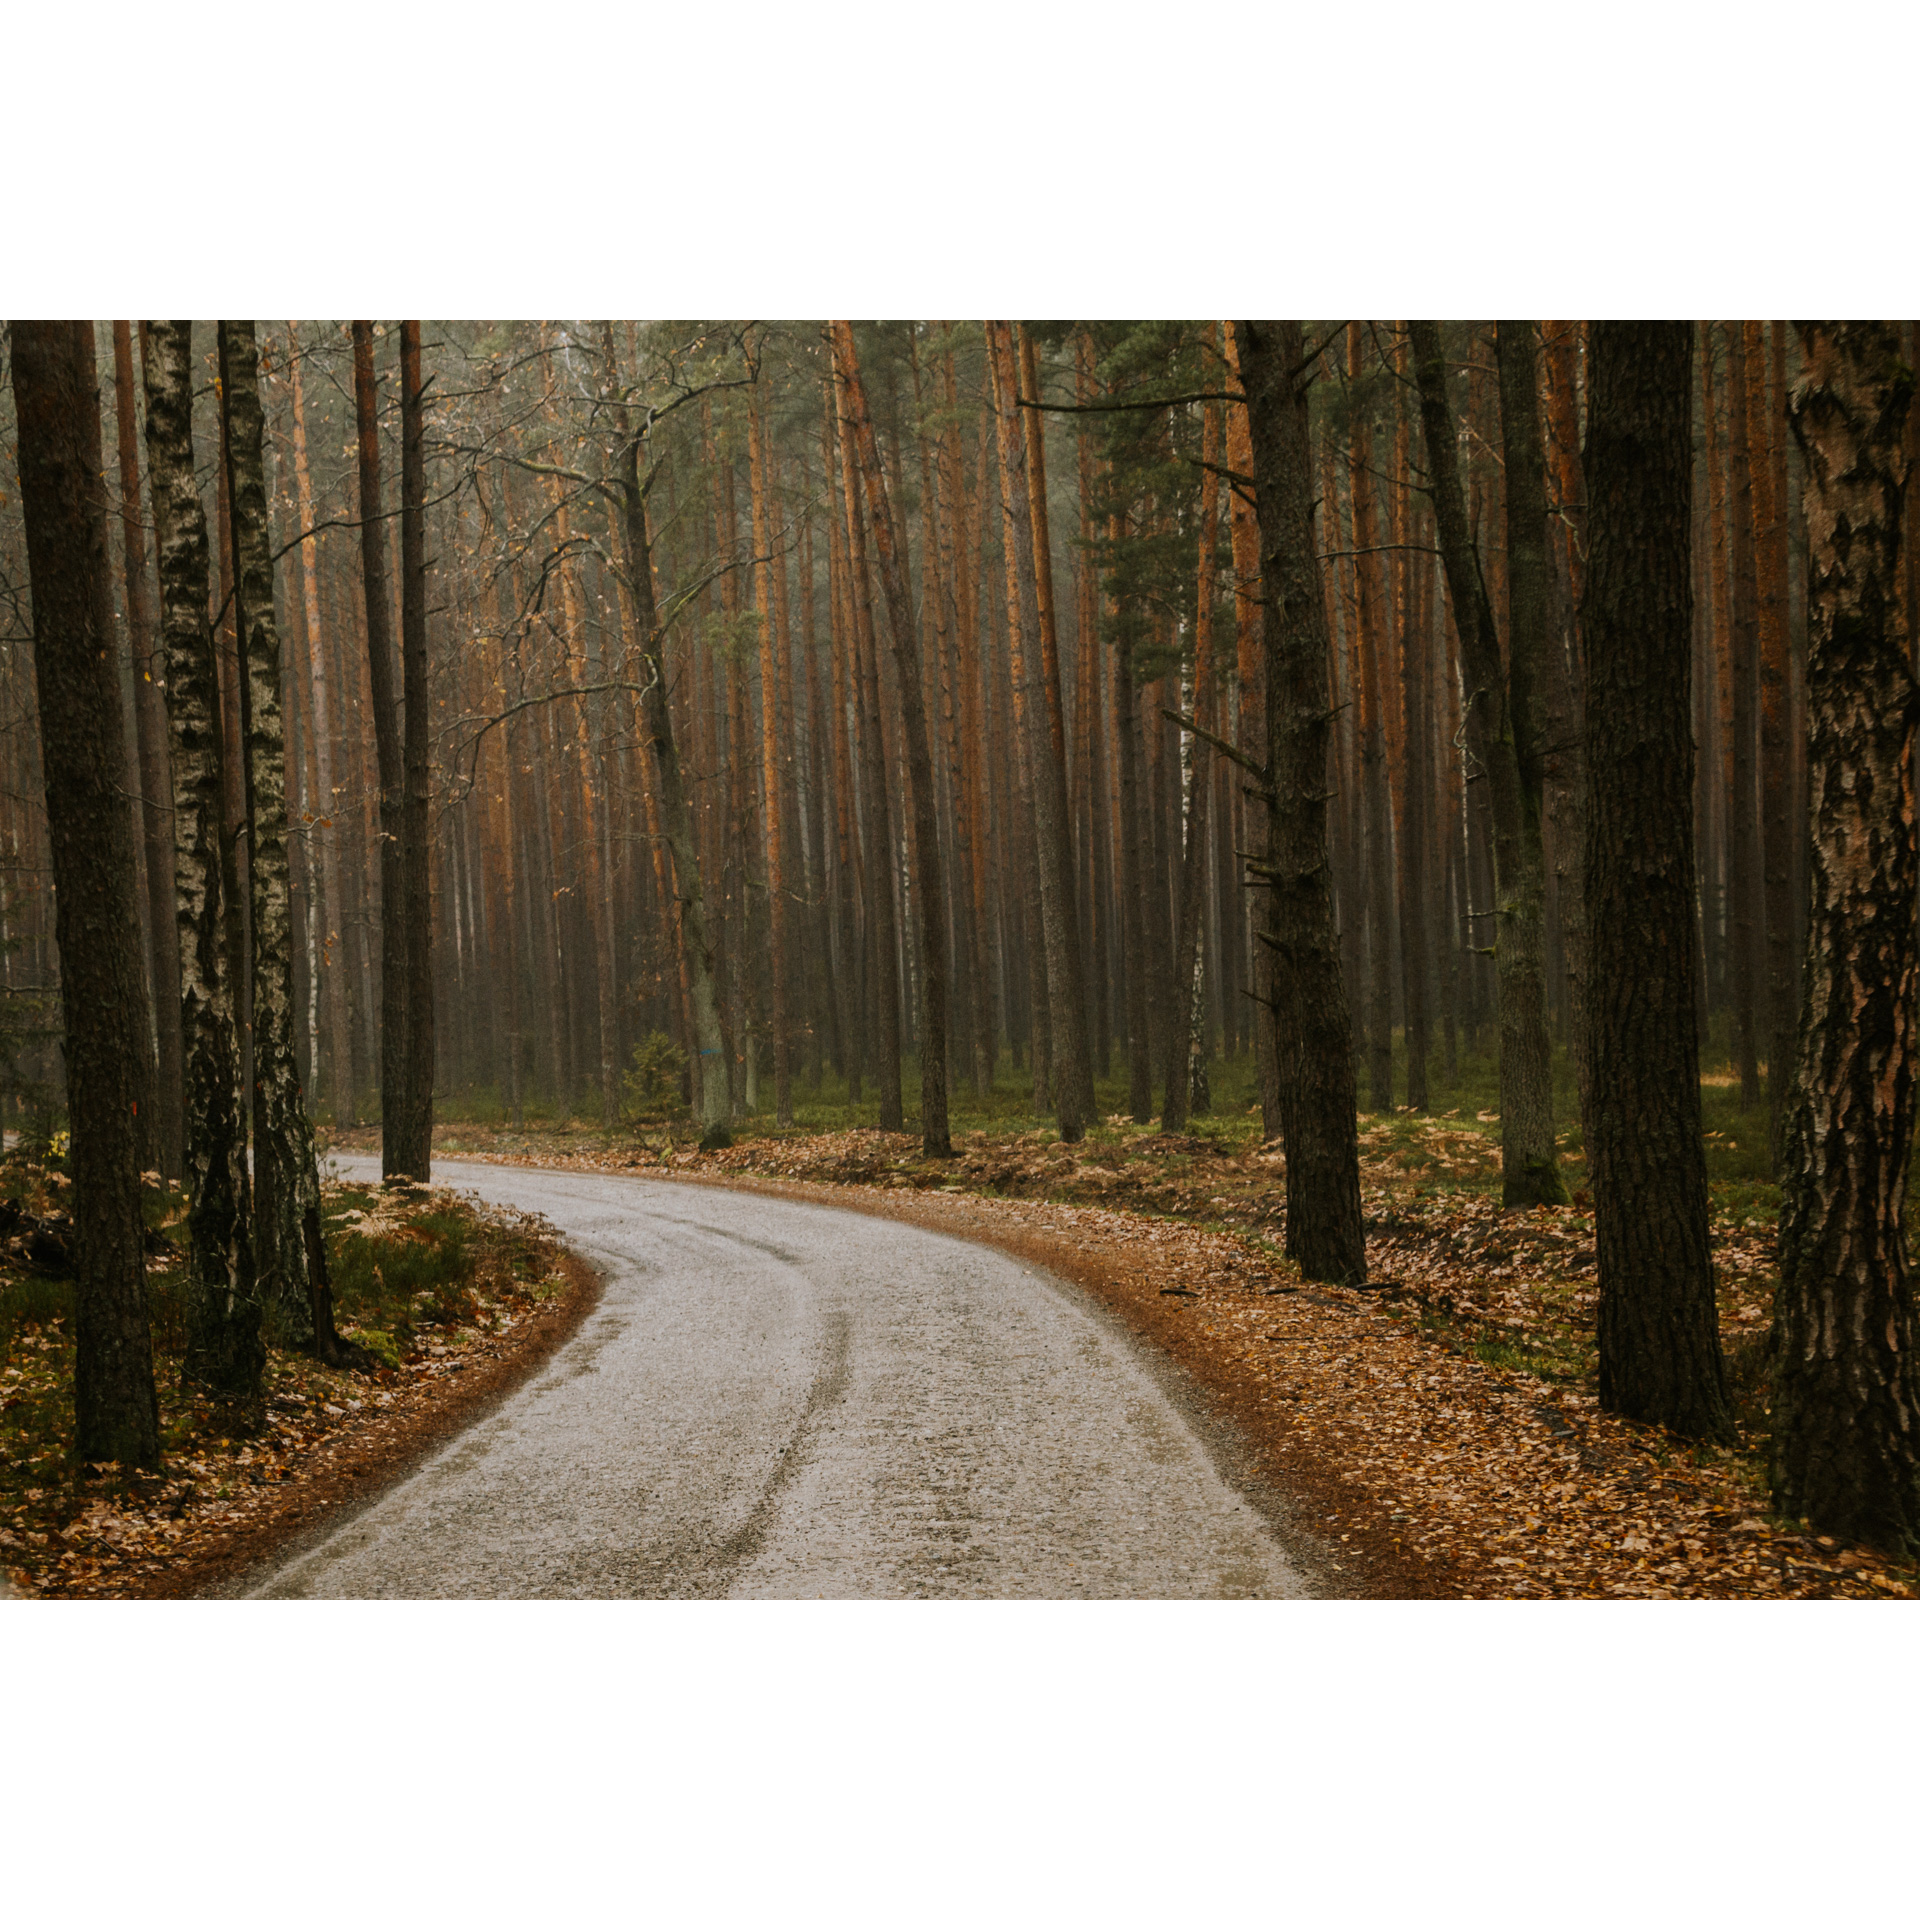 Kamienista droga prowadząca przez las wśród wysokich drzew 